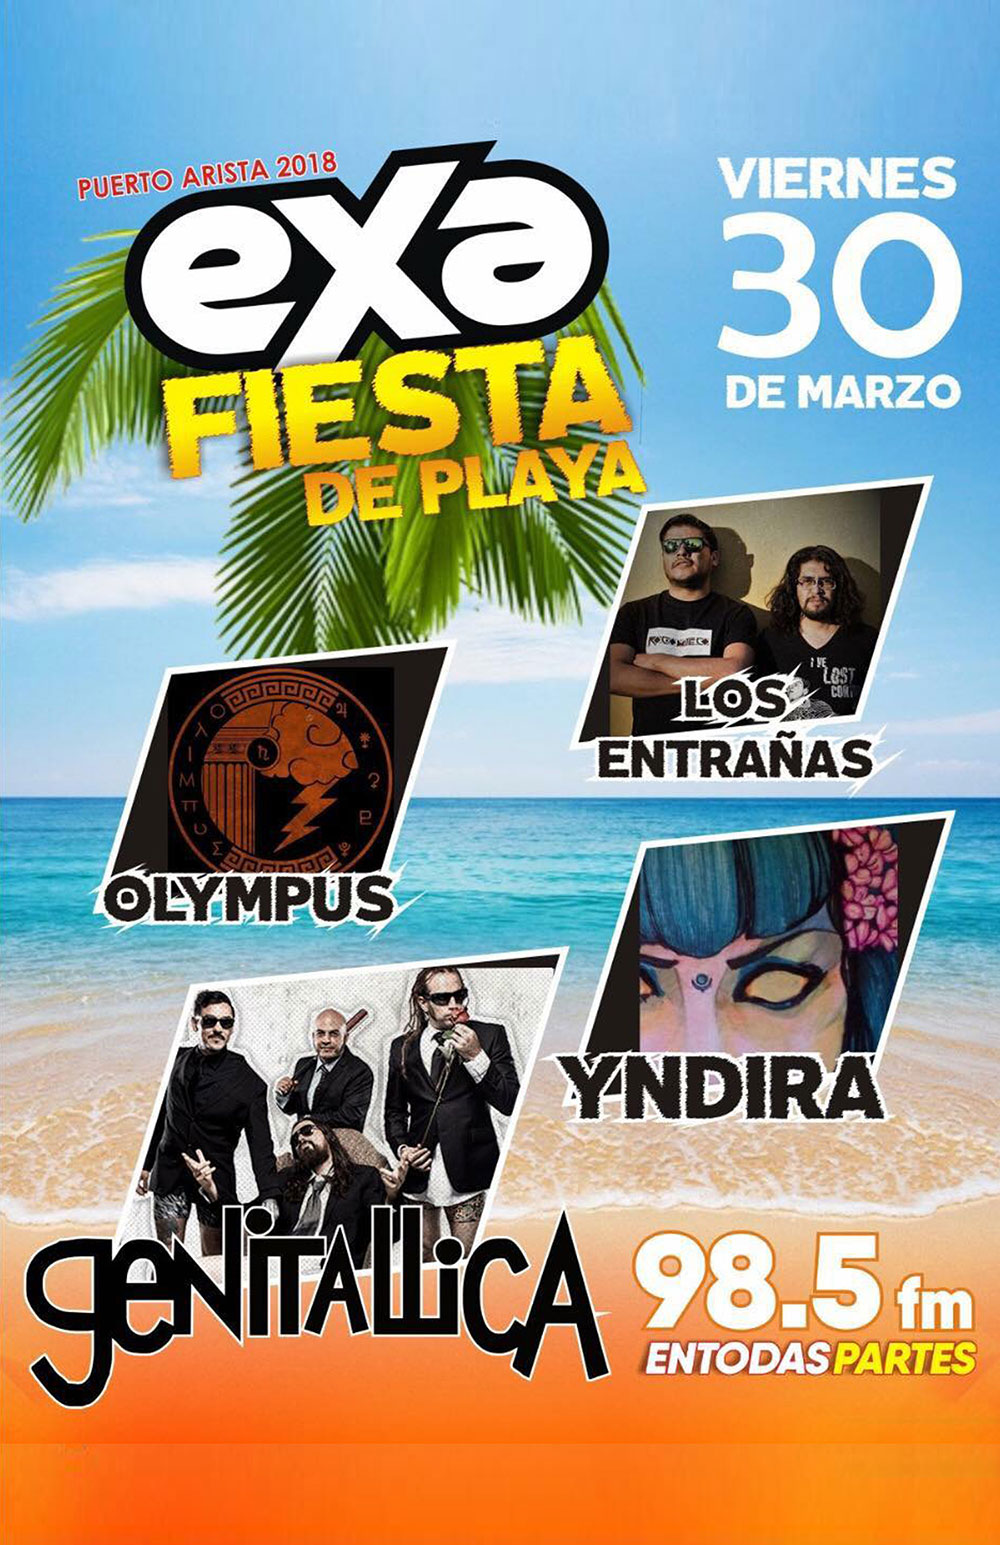 Genitallica – Exa Fiesta de Playa Puerto Arista